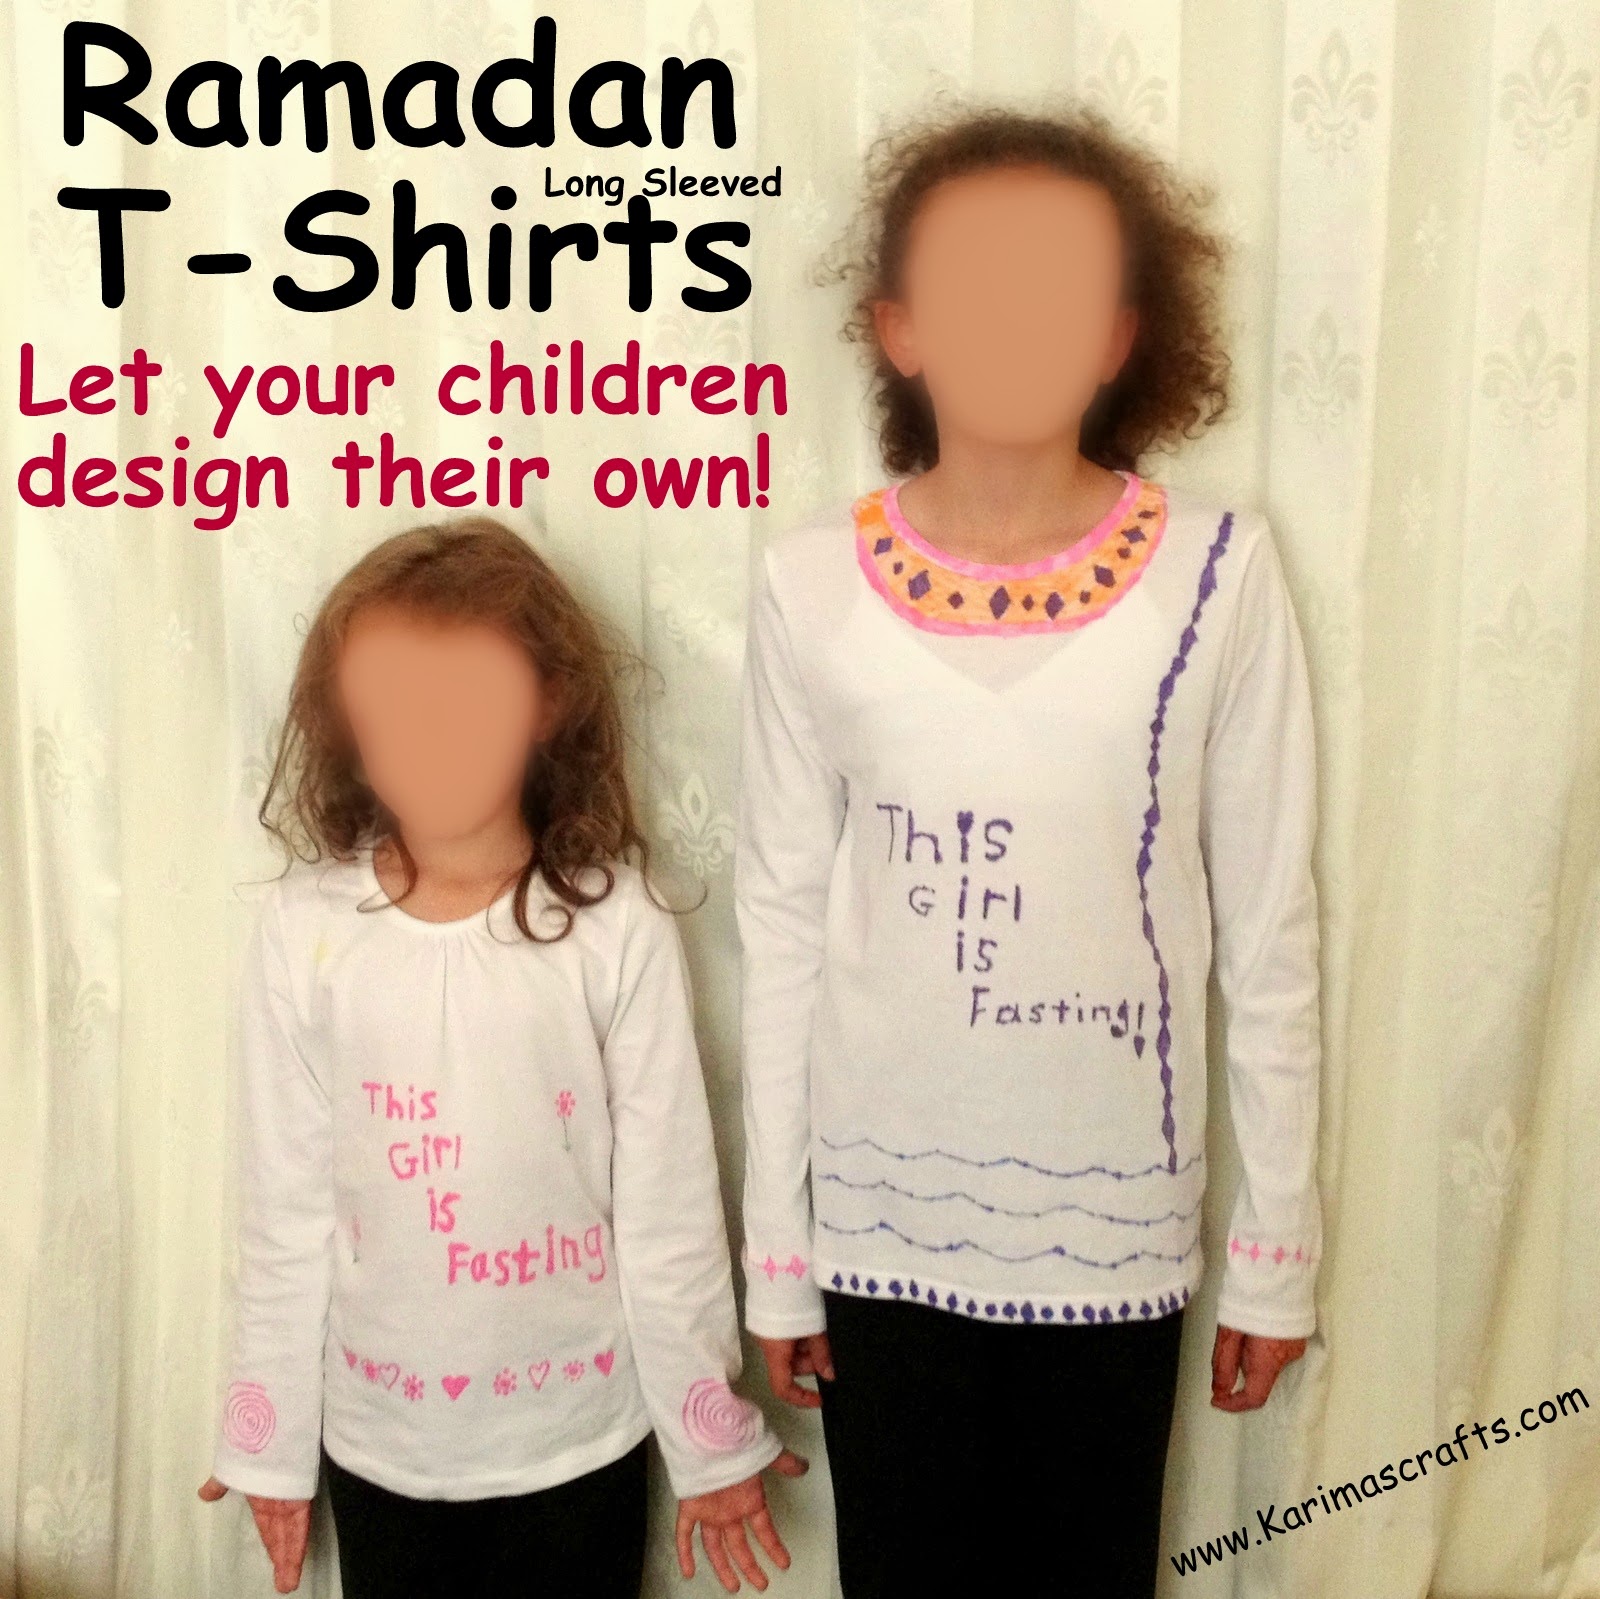 Ramadan T-shirt designing crafts Islam Muslim